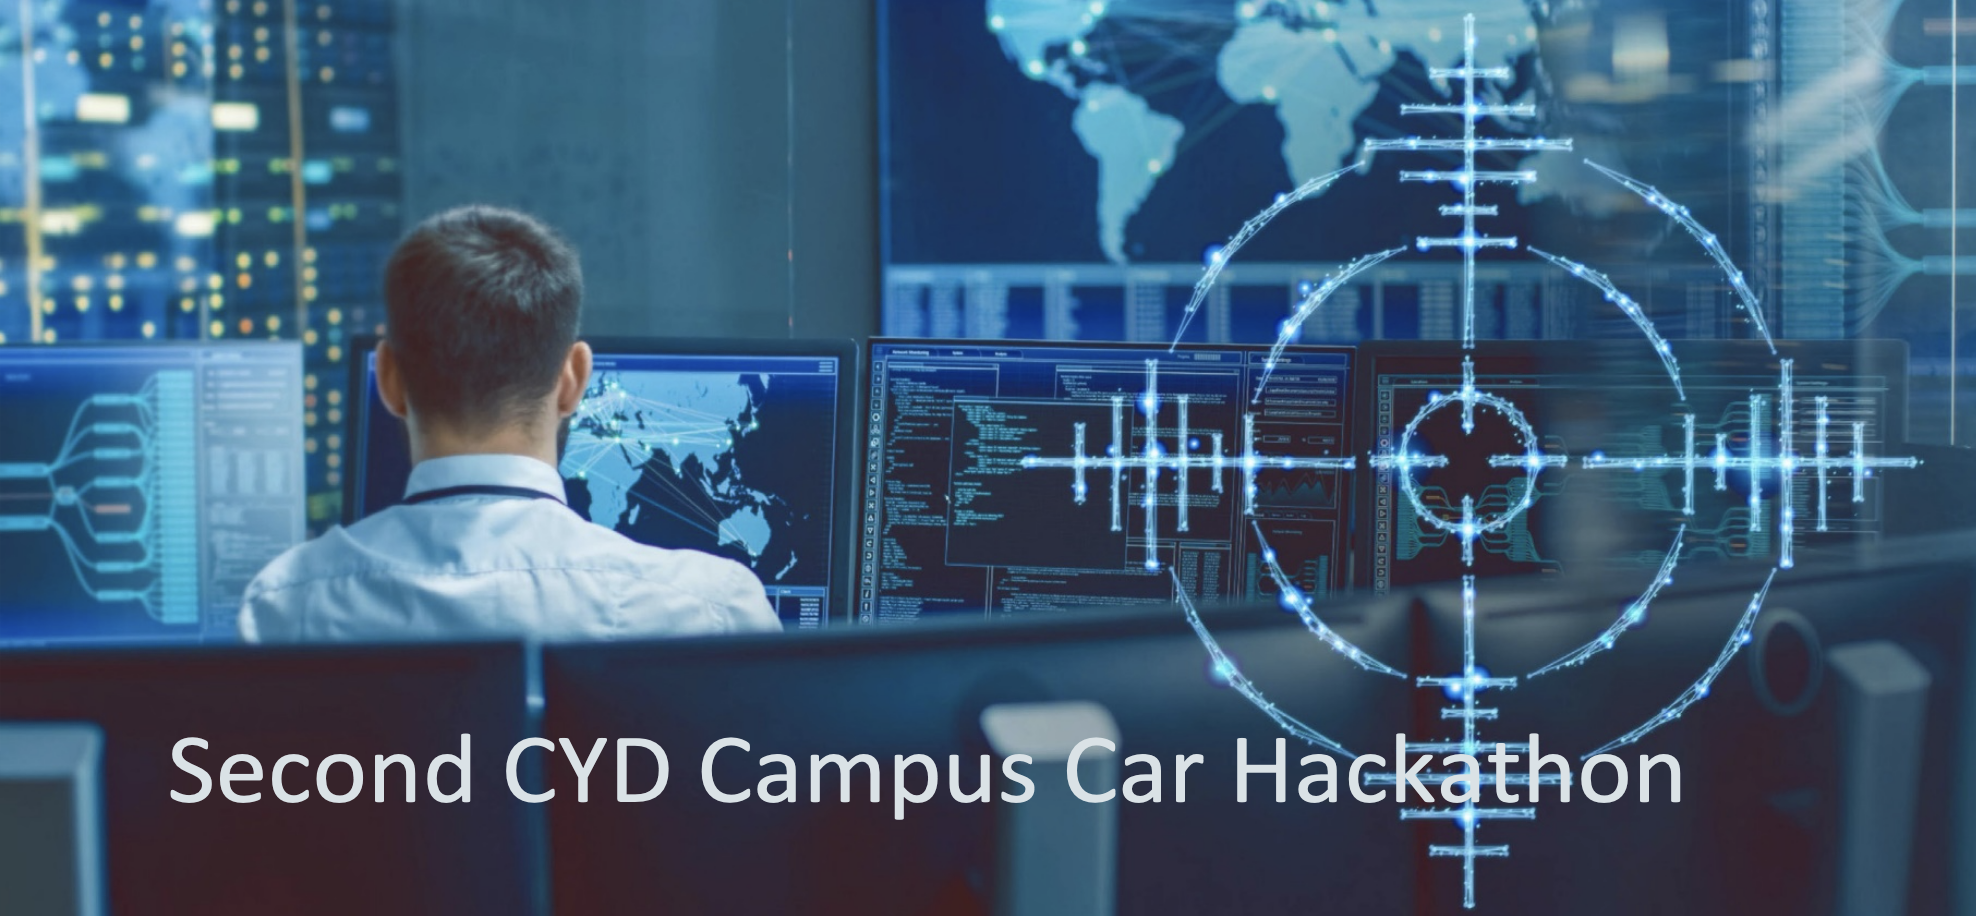 Second CYD Campus Car Hackathon